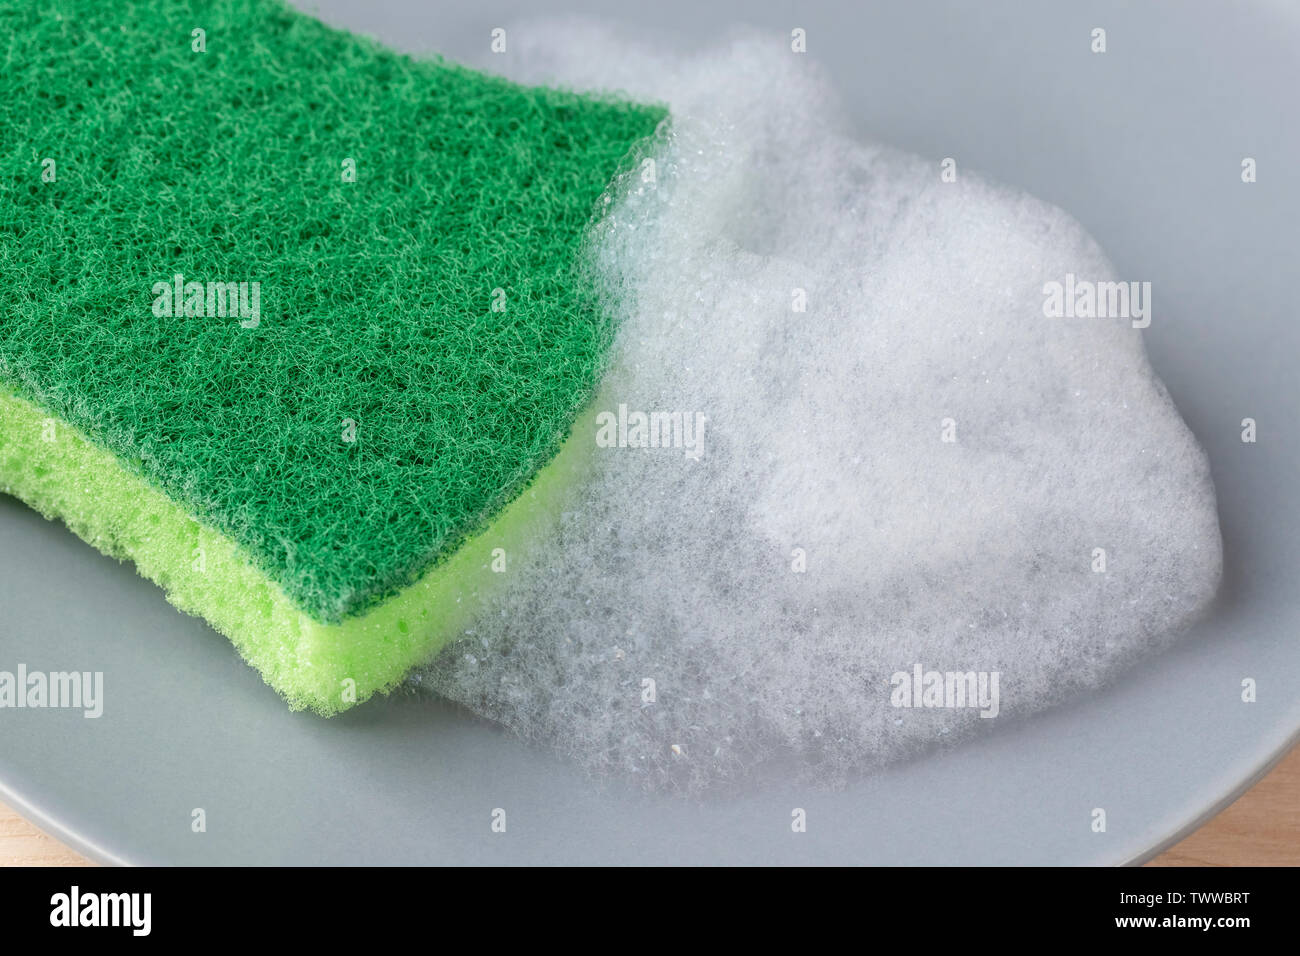 Cucina spugna verde con detergente in schiuma su una lastra grigia. Il lavaggio e la pulizia delle stoviglie e utensili domestici Foto Stock